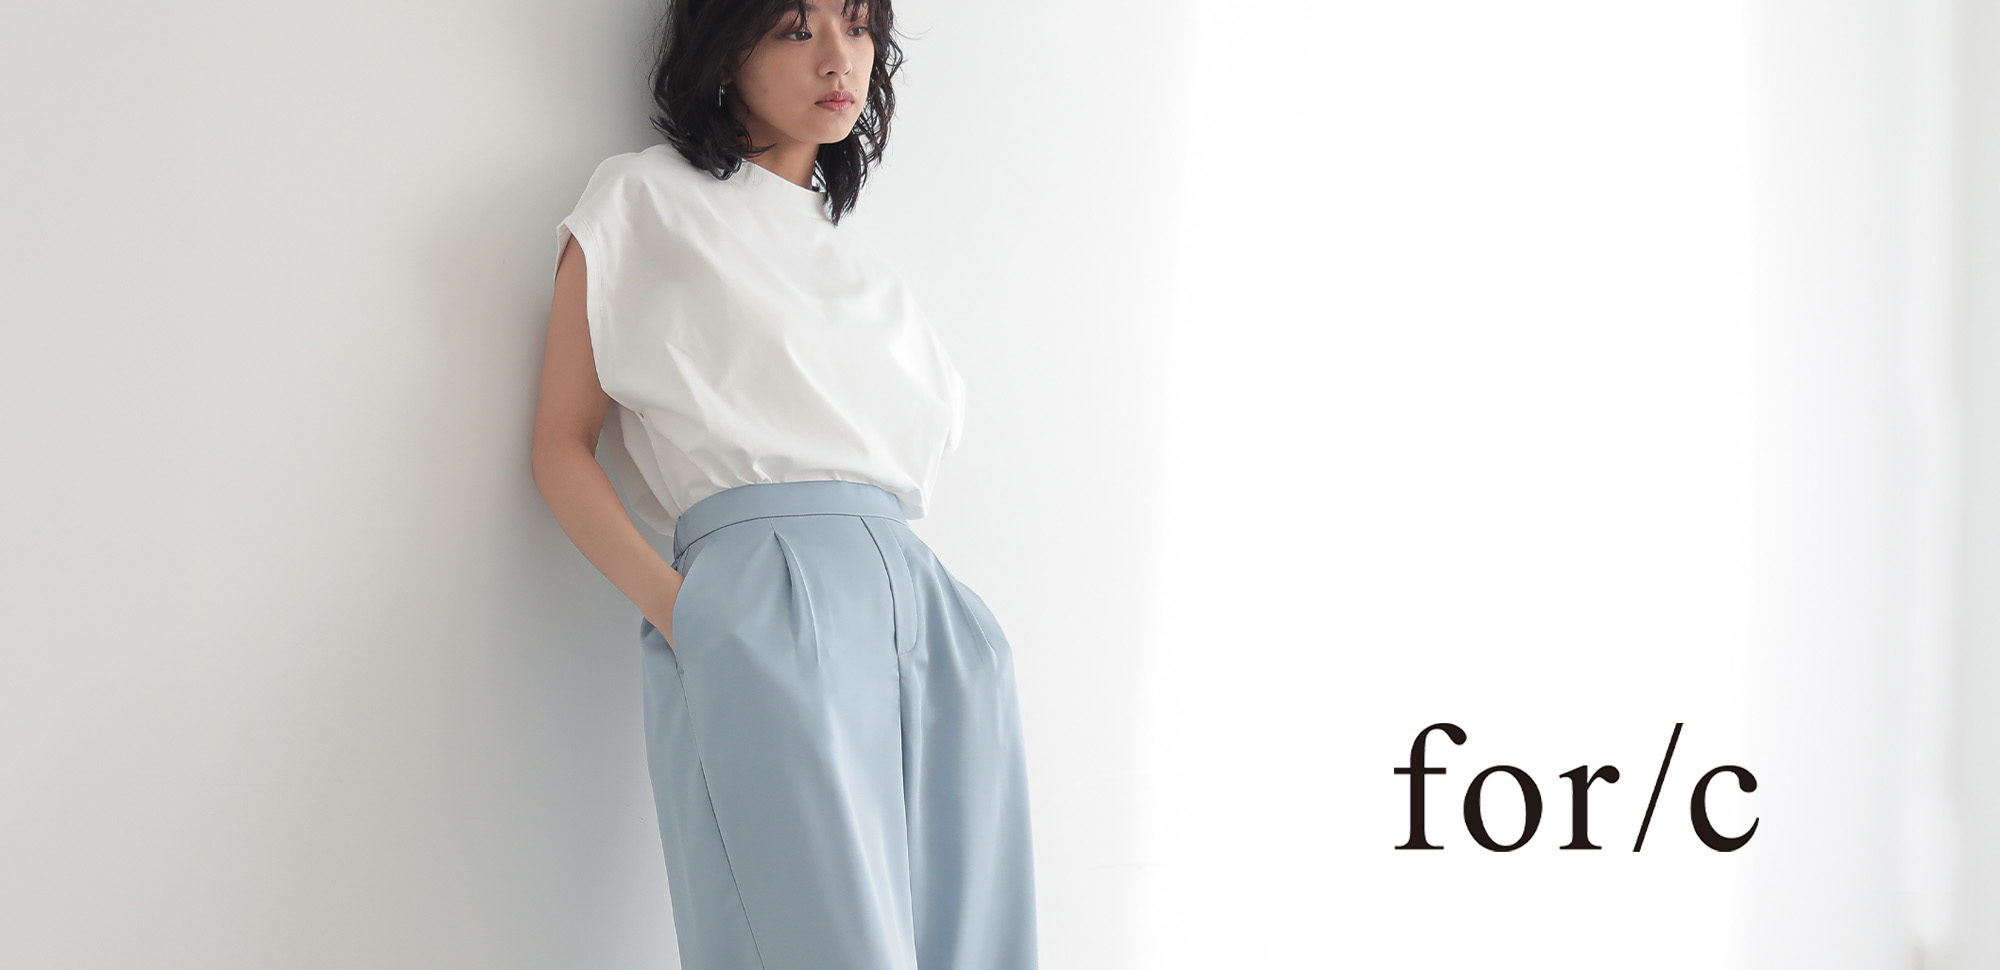 人と環境に配慮したサスティナブルファッションブランド「for/c」3月4日で販売2周年 5月に新ライン「for/c and」を販売開始予定